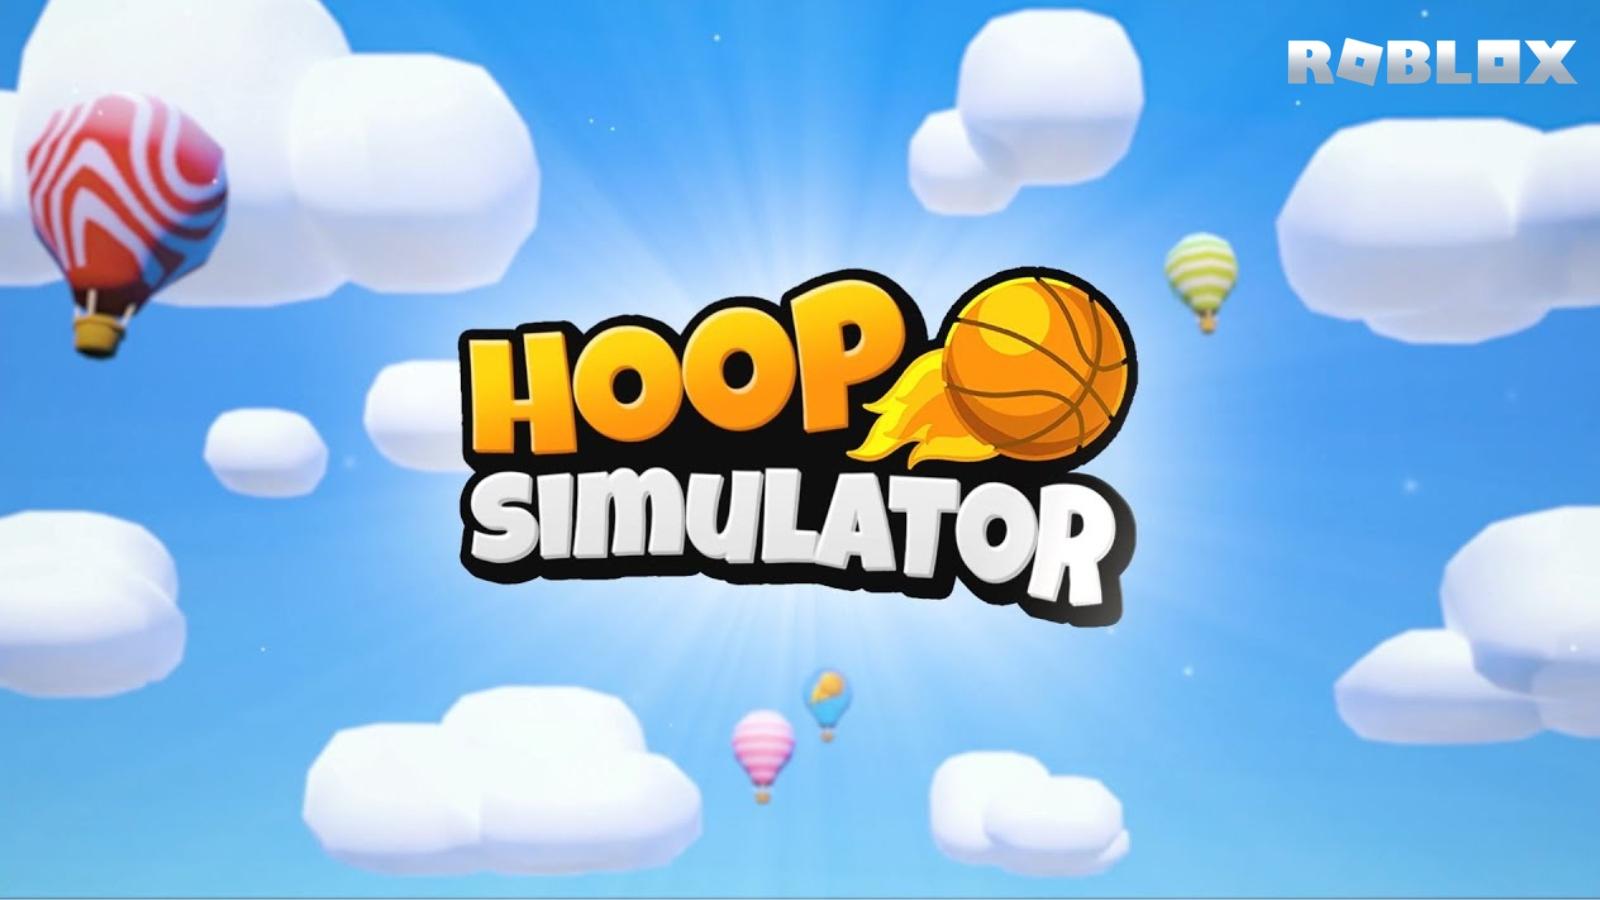 Hoop Simulator Roblox cover